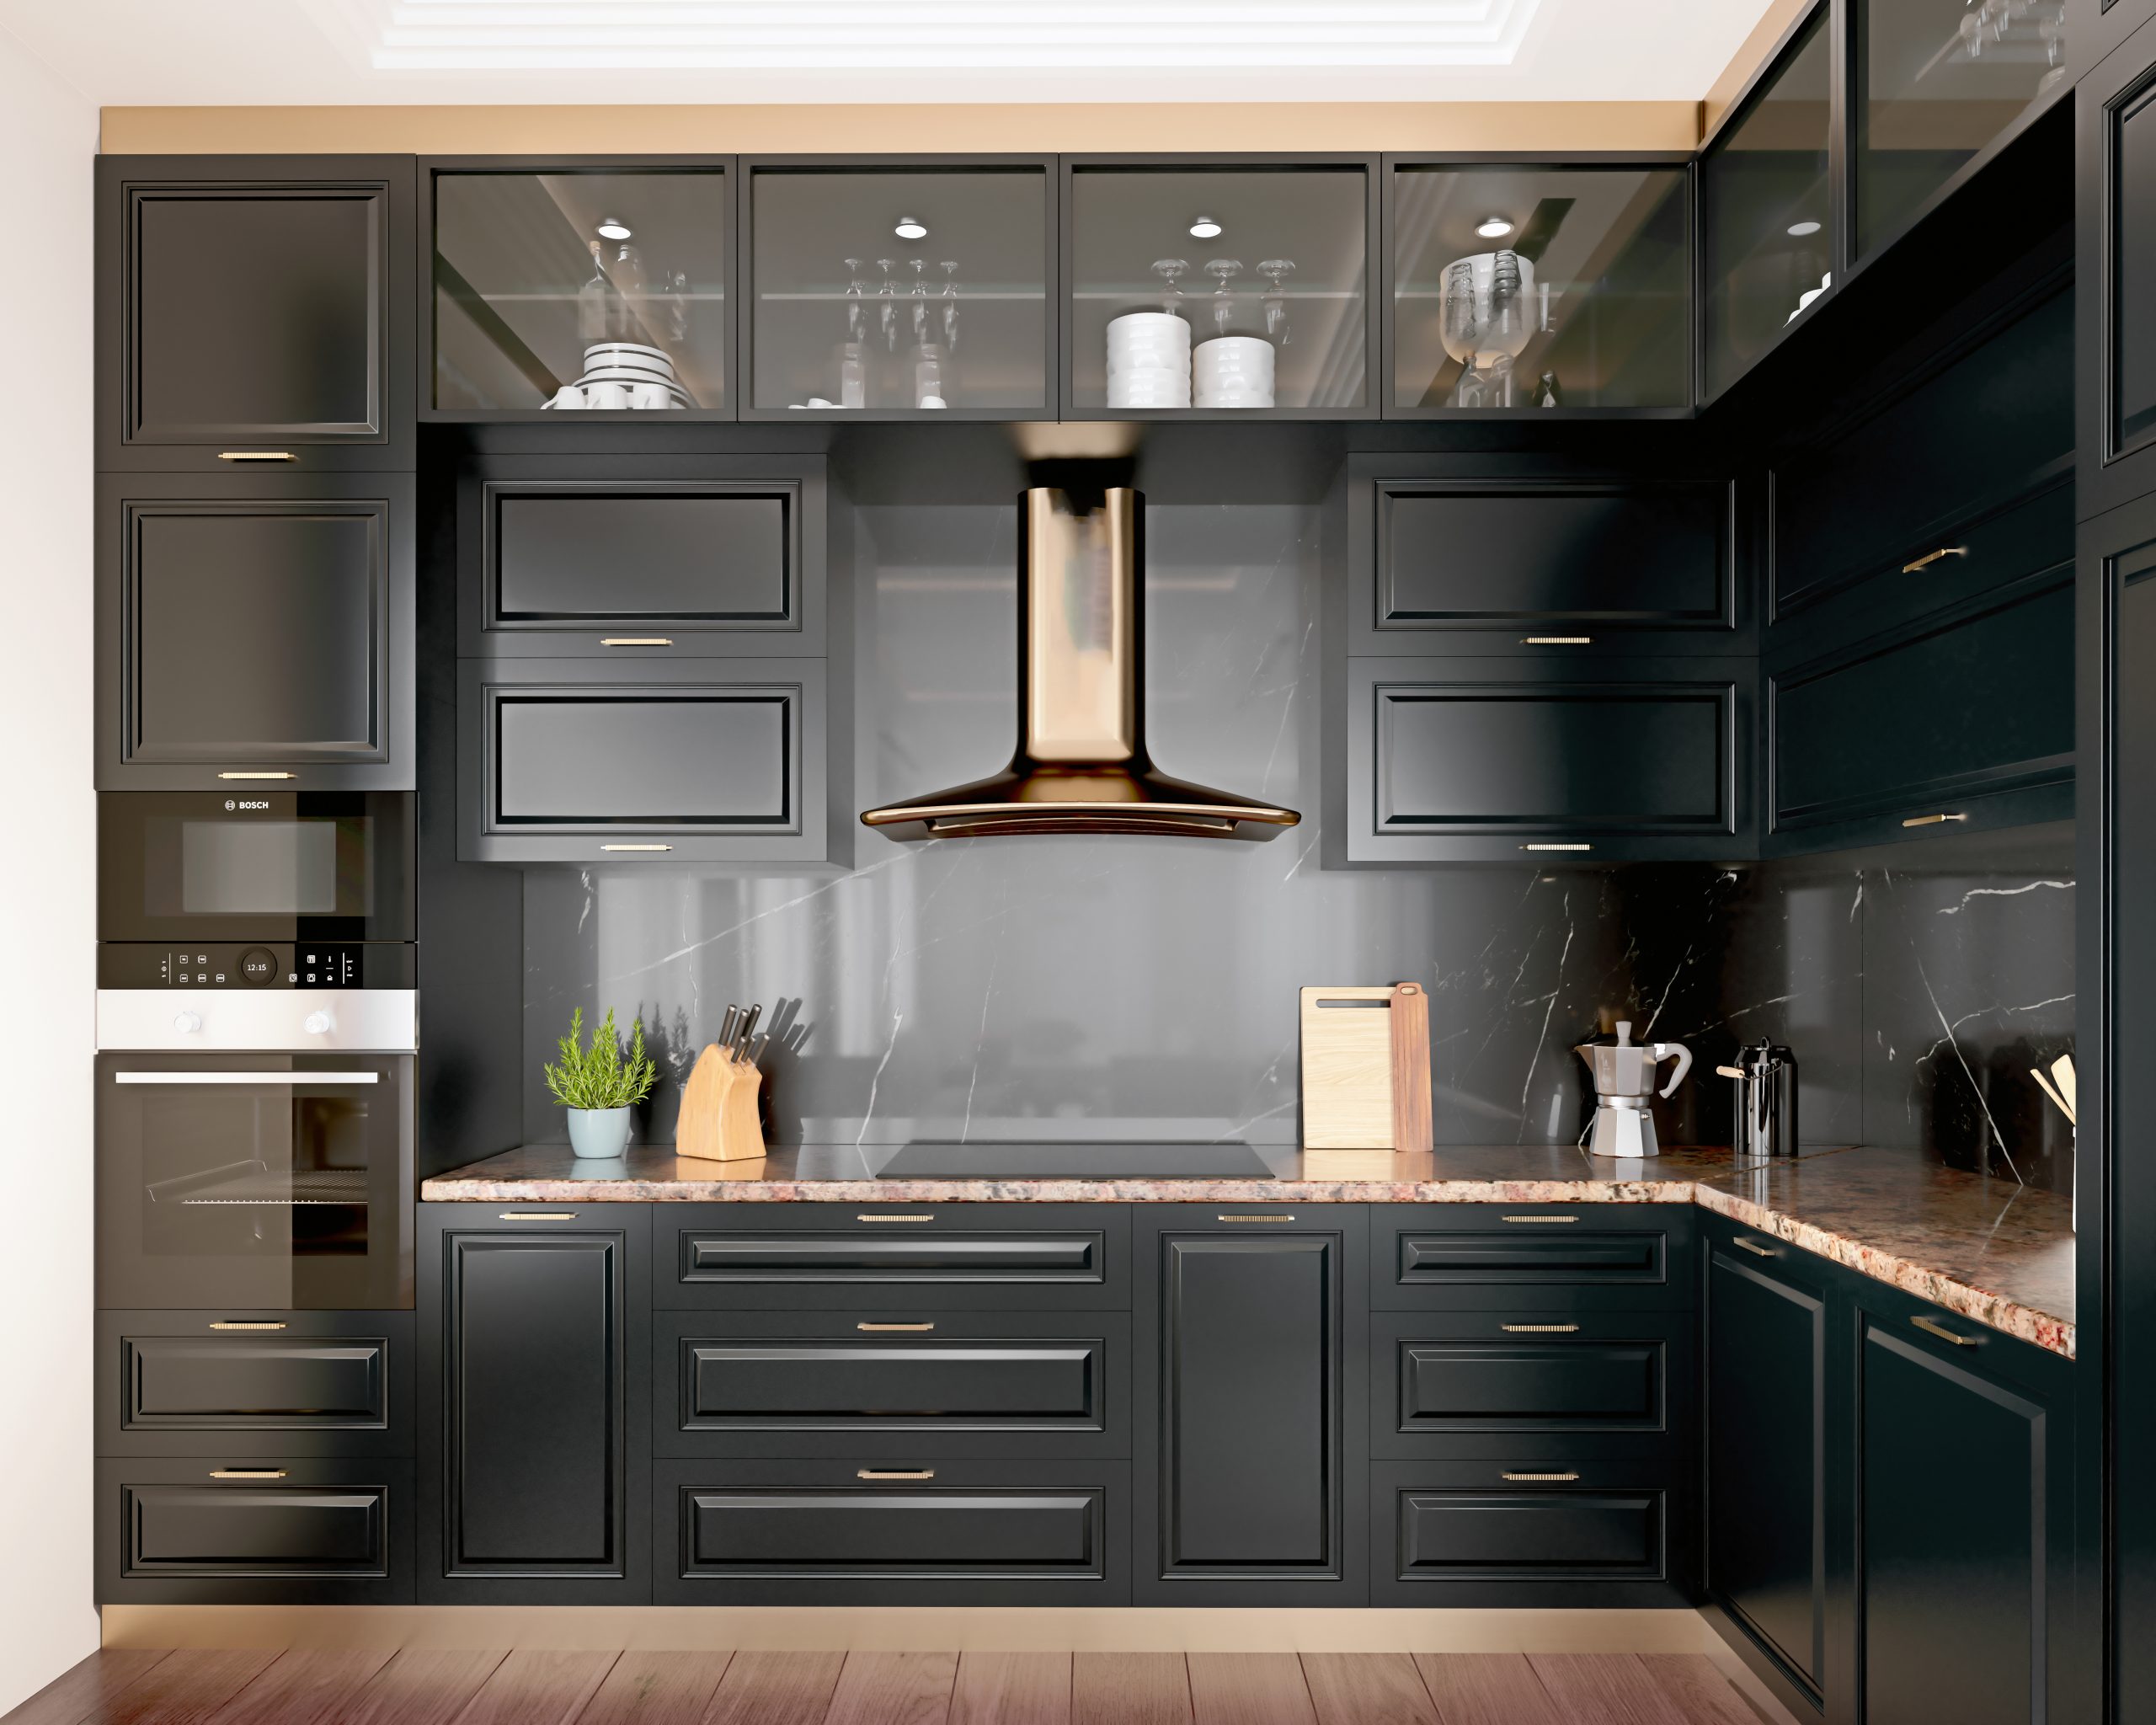 Dark kitchen cabinet ideas – 10 ways to style a dramatically dark scheme